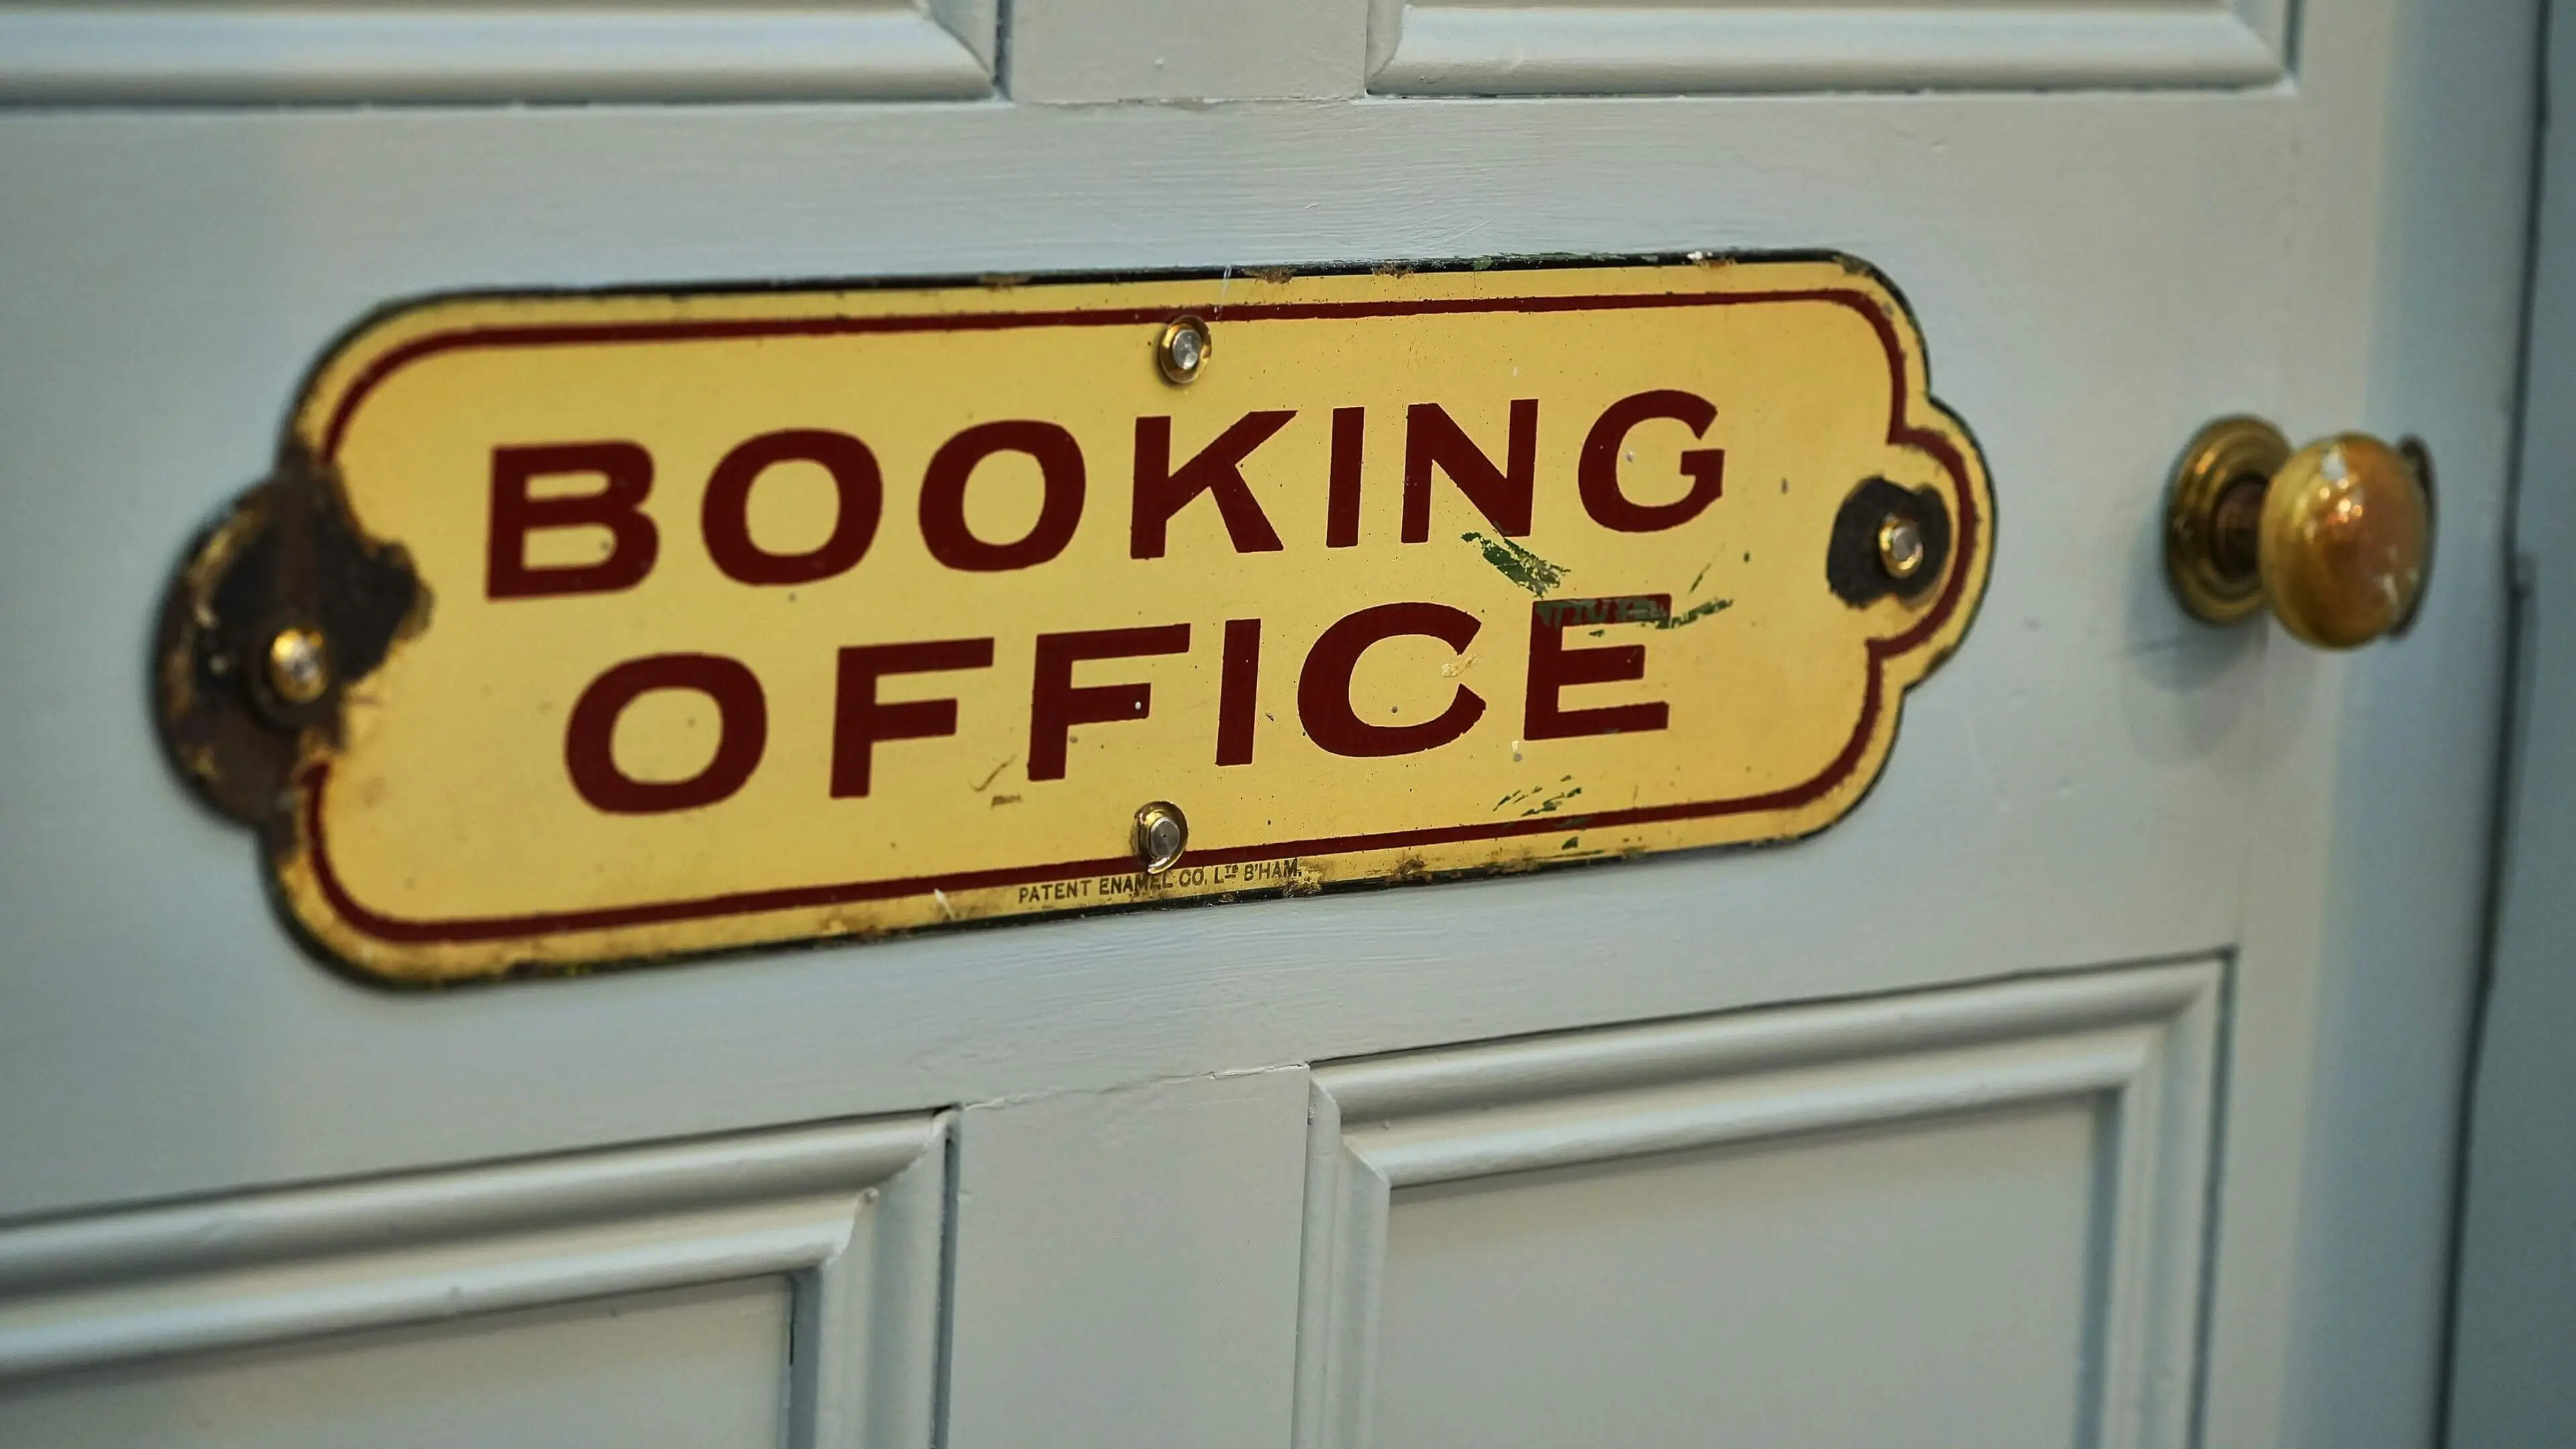 Booking office sign of the door